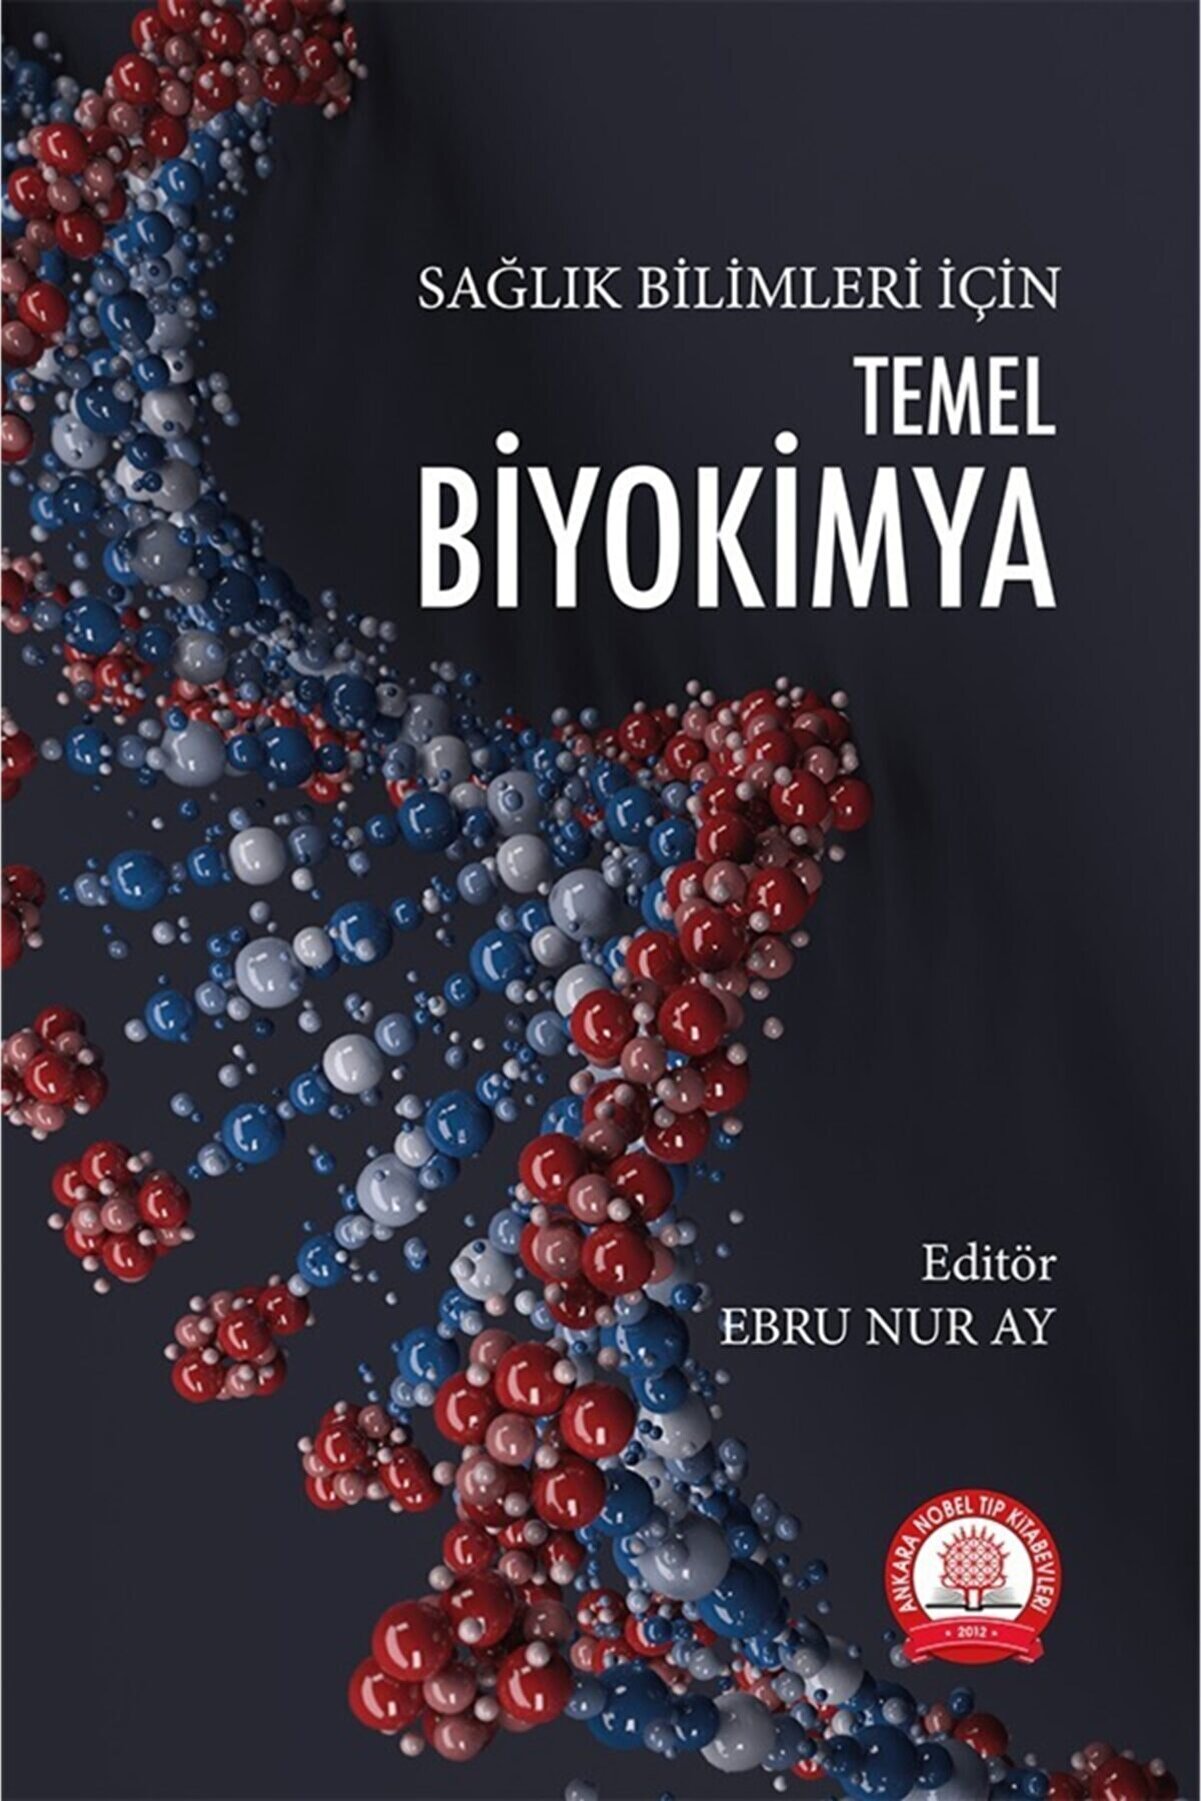 Ankara Nobel Tıp Kitapevleri Temel Biyokimya Sağlık Bilimleri Için